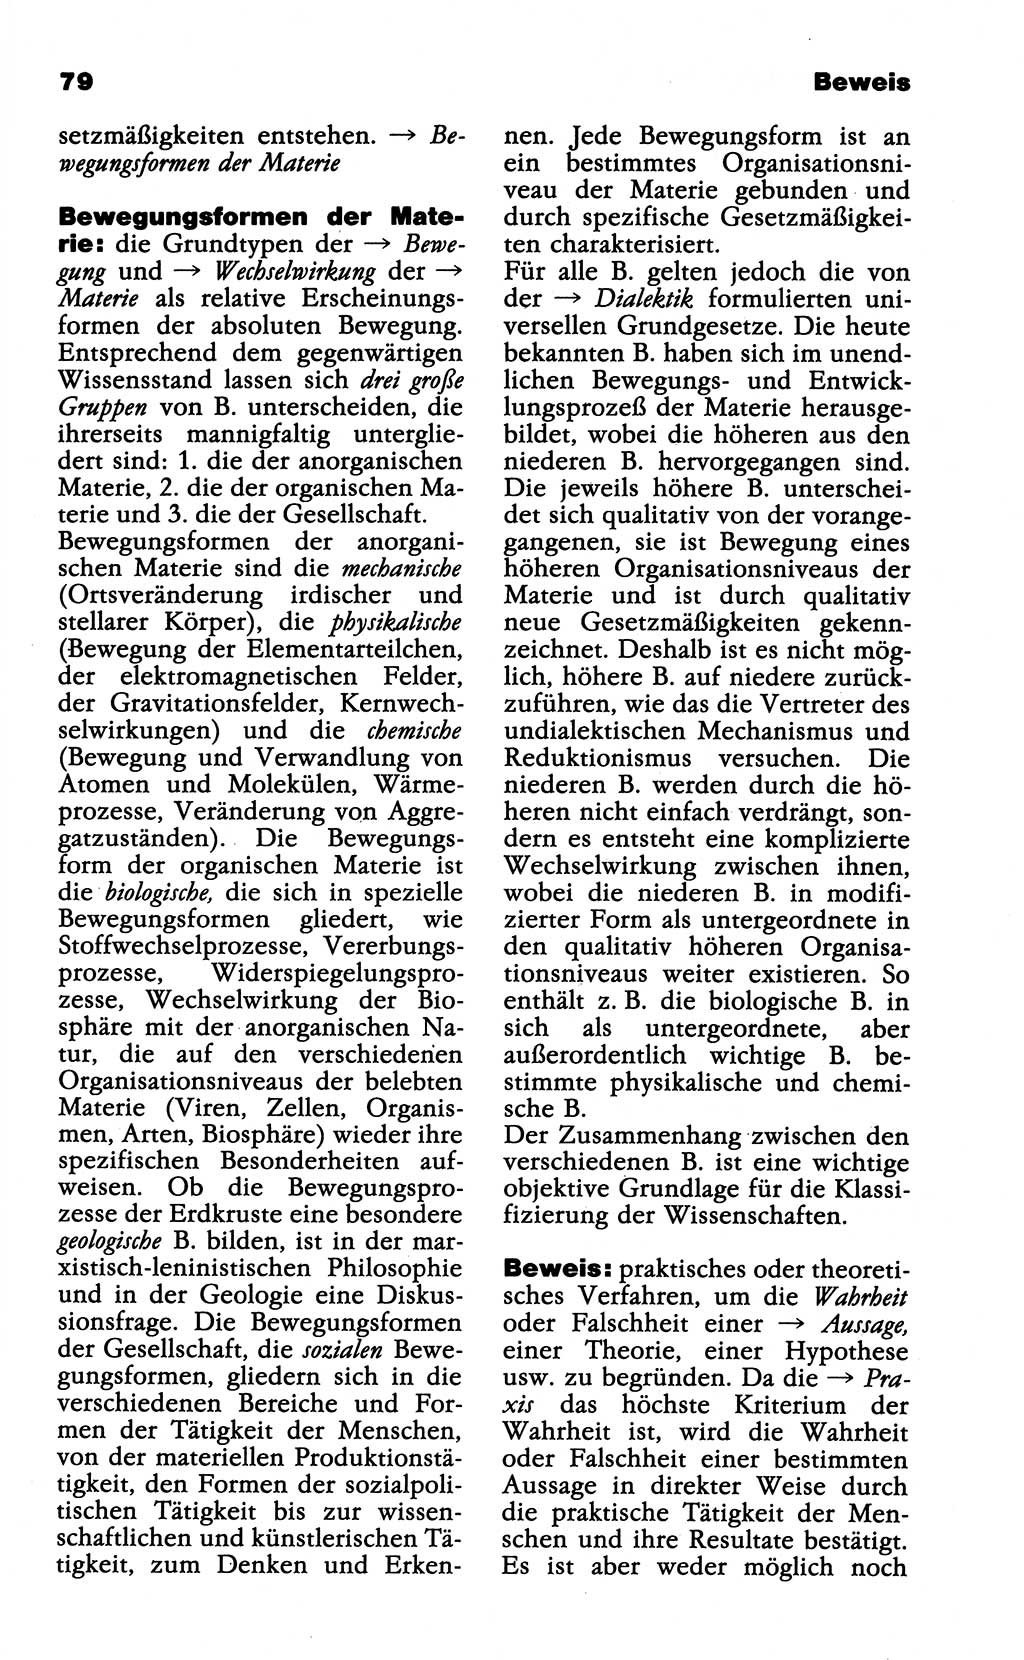 Wörterbuch der marxistisch-leninistischen Philosophie [Deutsche Demokratische Republik (DDR)] 1985, Seite 79 (Wb. ML Phil. DDR 1985, S. 79)